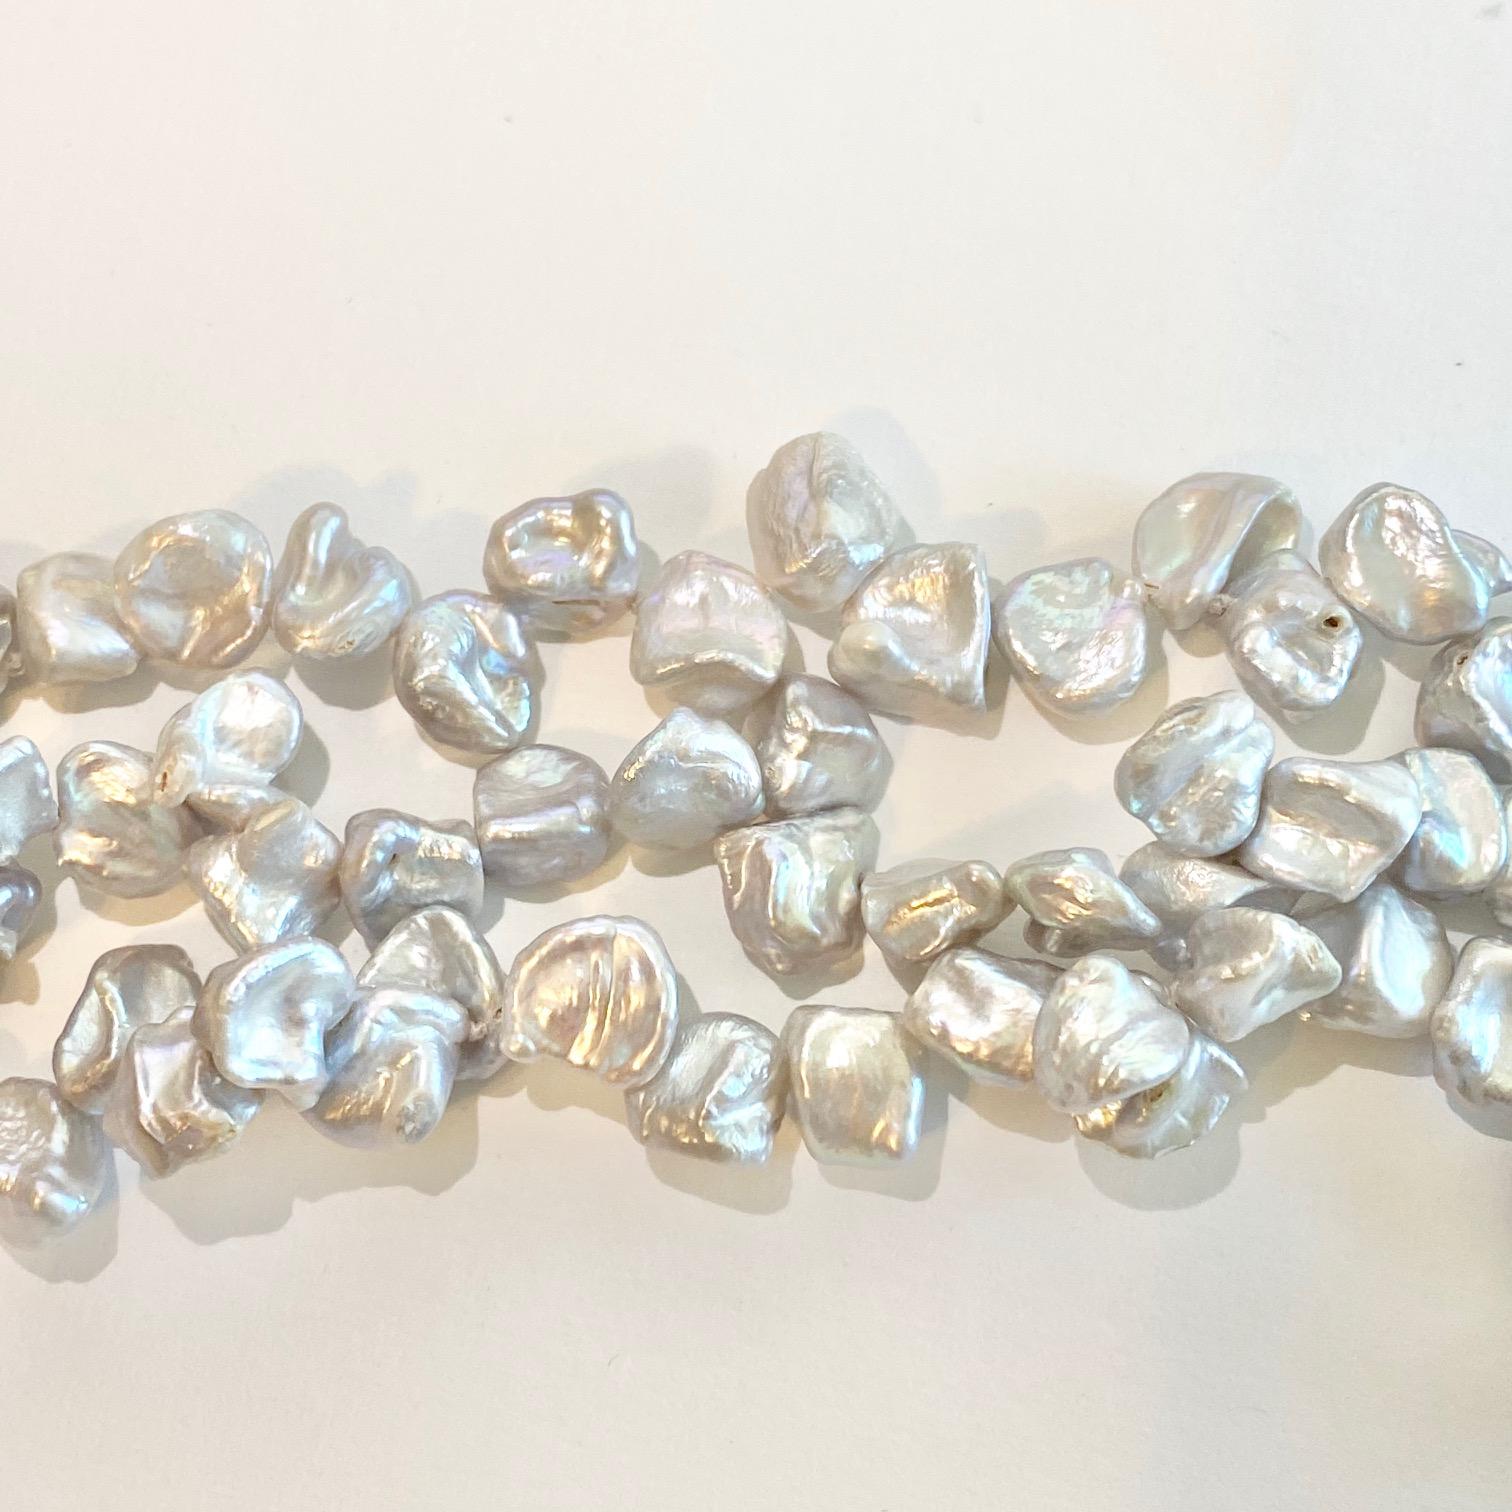 Ce collier est une pièce très classique ! Il comporte trois rangs de véritables perles Keshi. Ce collier est réglable en longueur pour plus de polyvalence ! Ces perles ont des formes organiques si étonnantes et un lustre magnifique !
Fermeture à